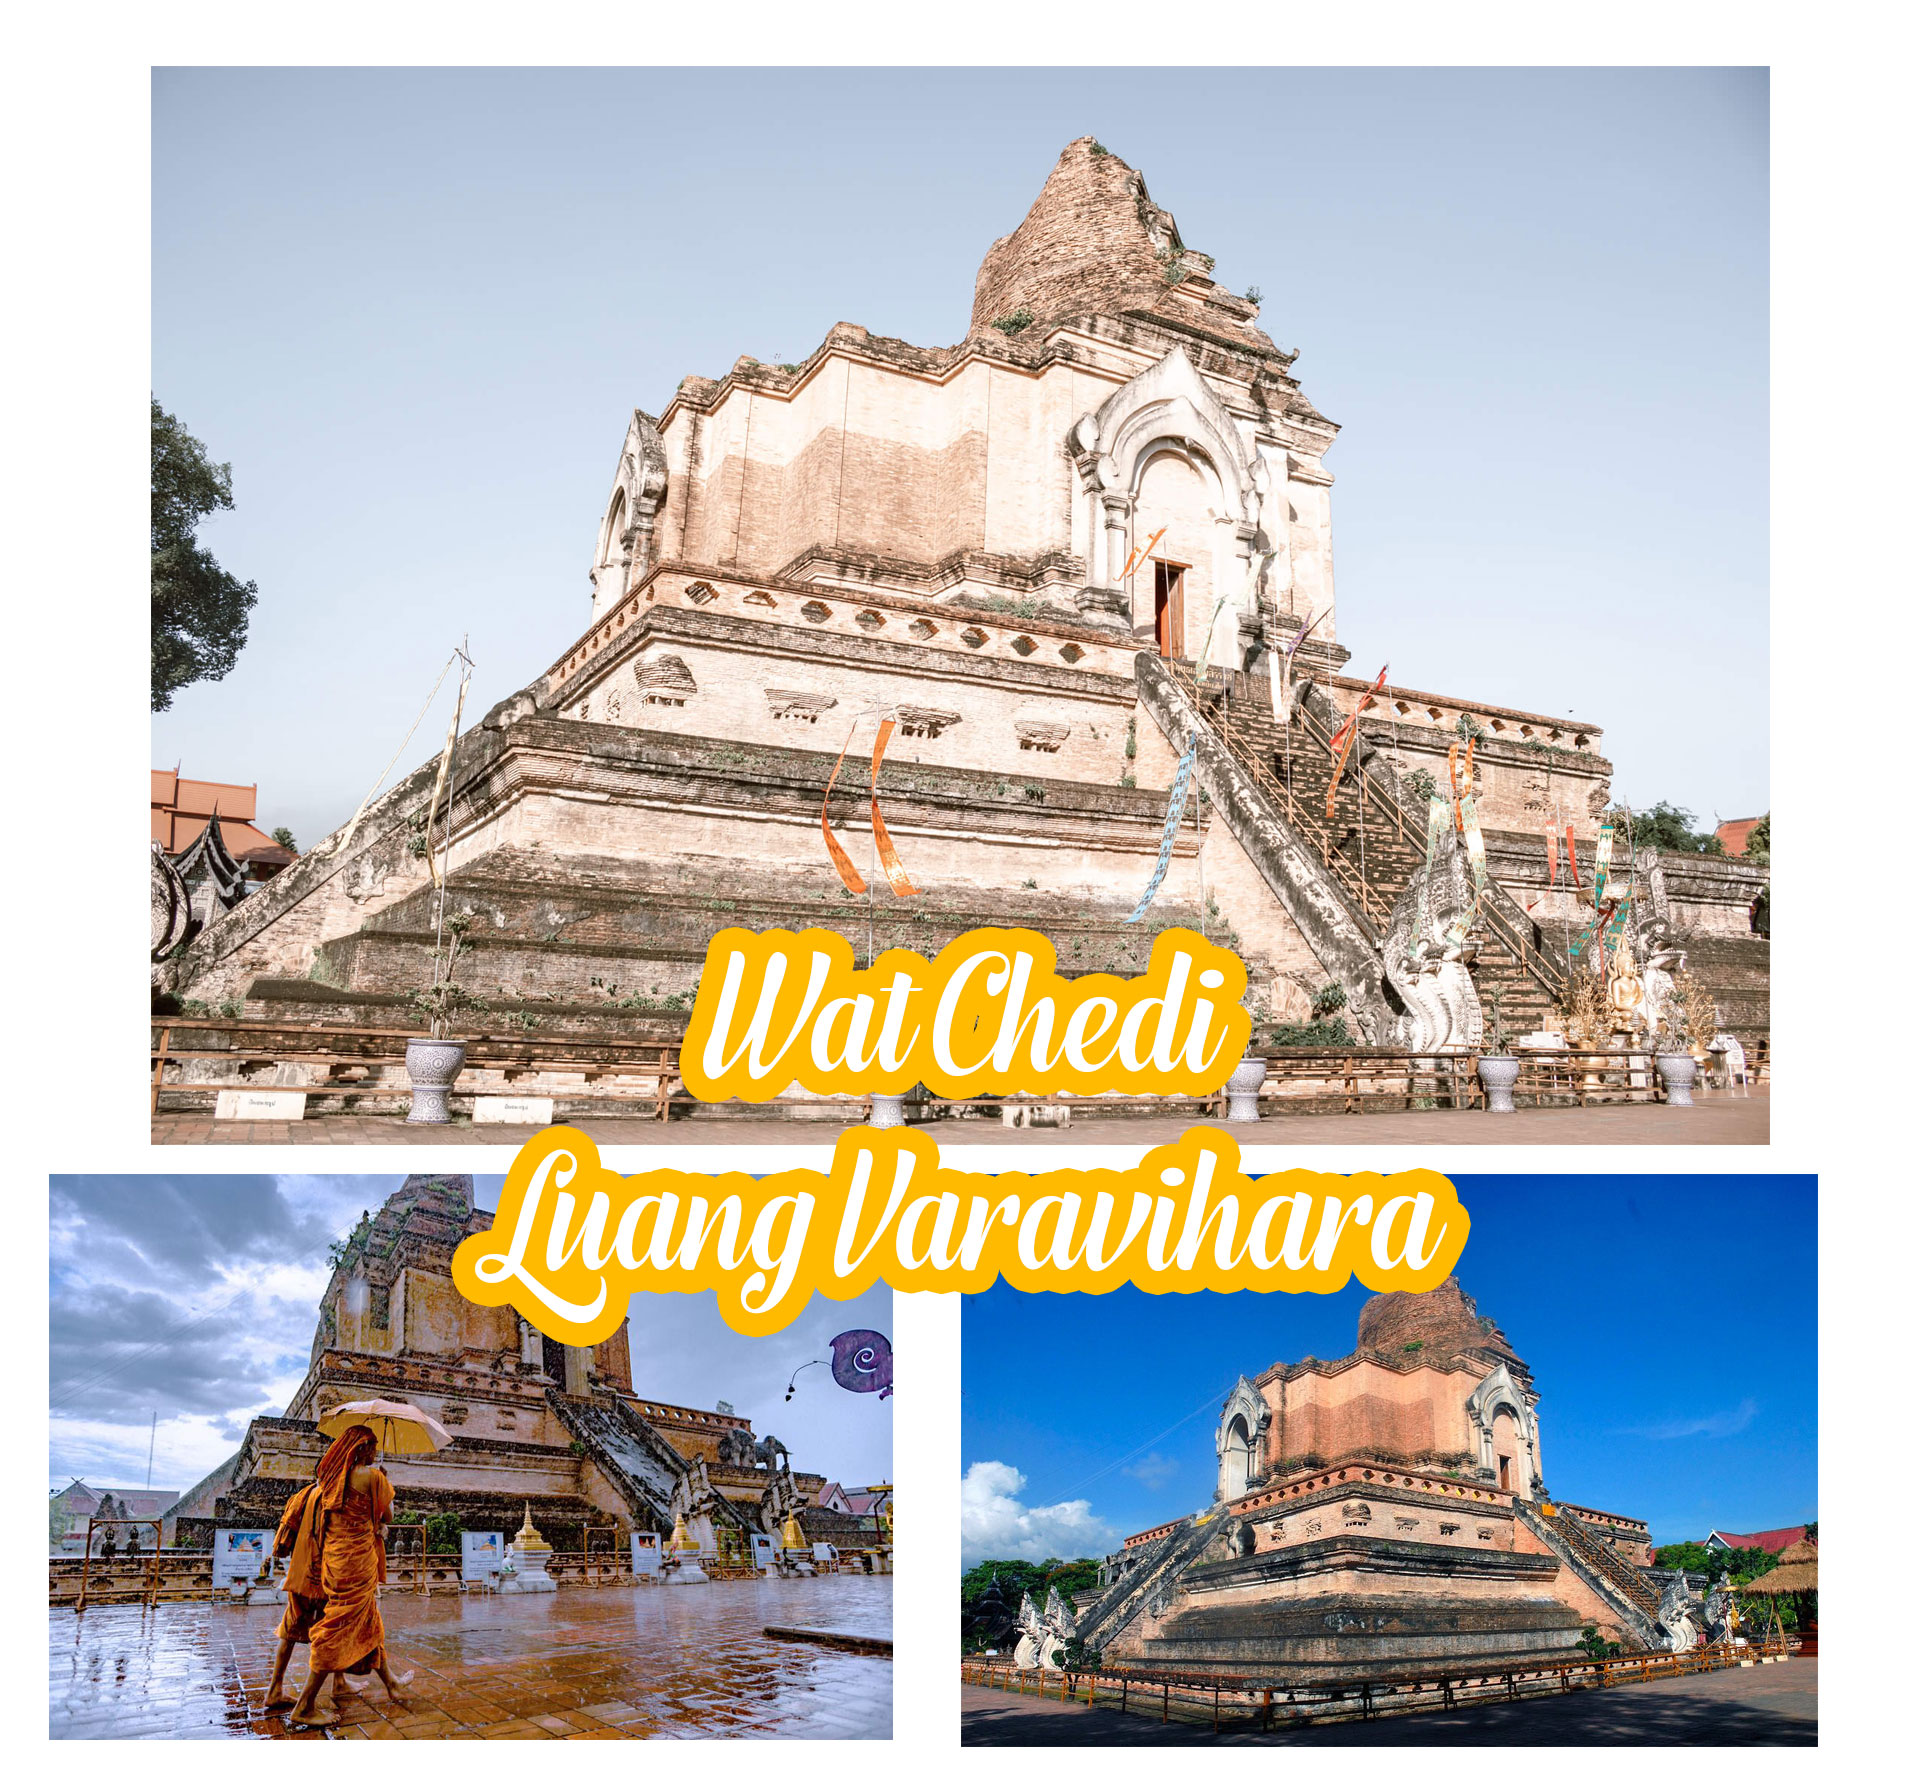 8 ngôi chùa ấn tượng nhất Chiang Mai, Thái Lan - 3